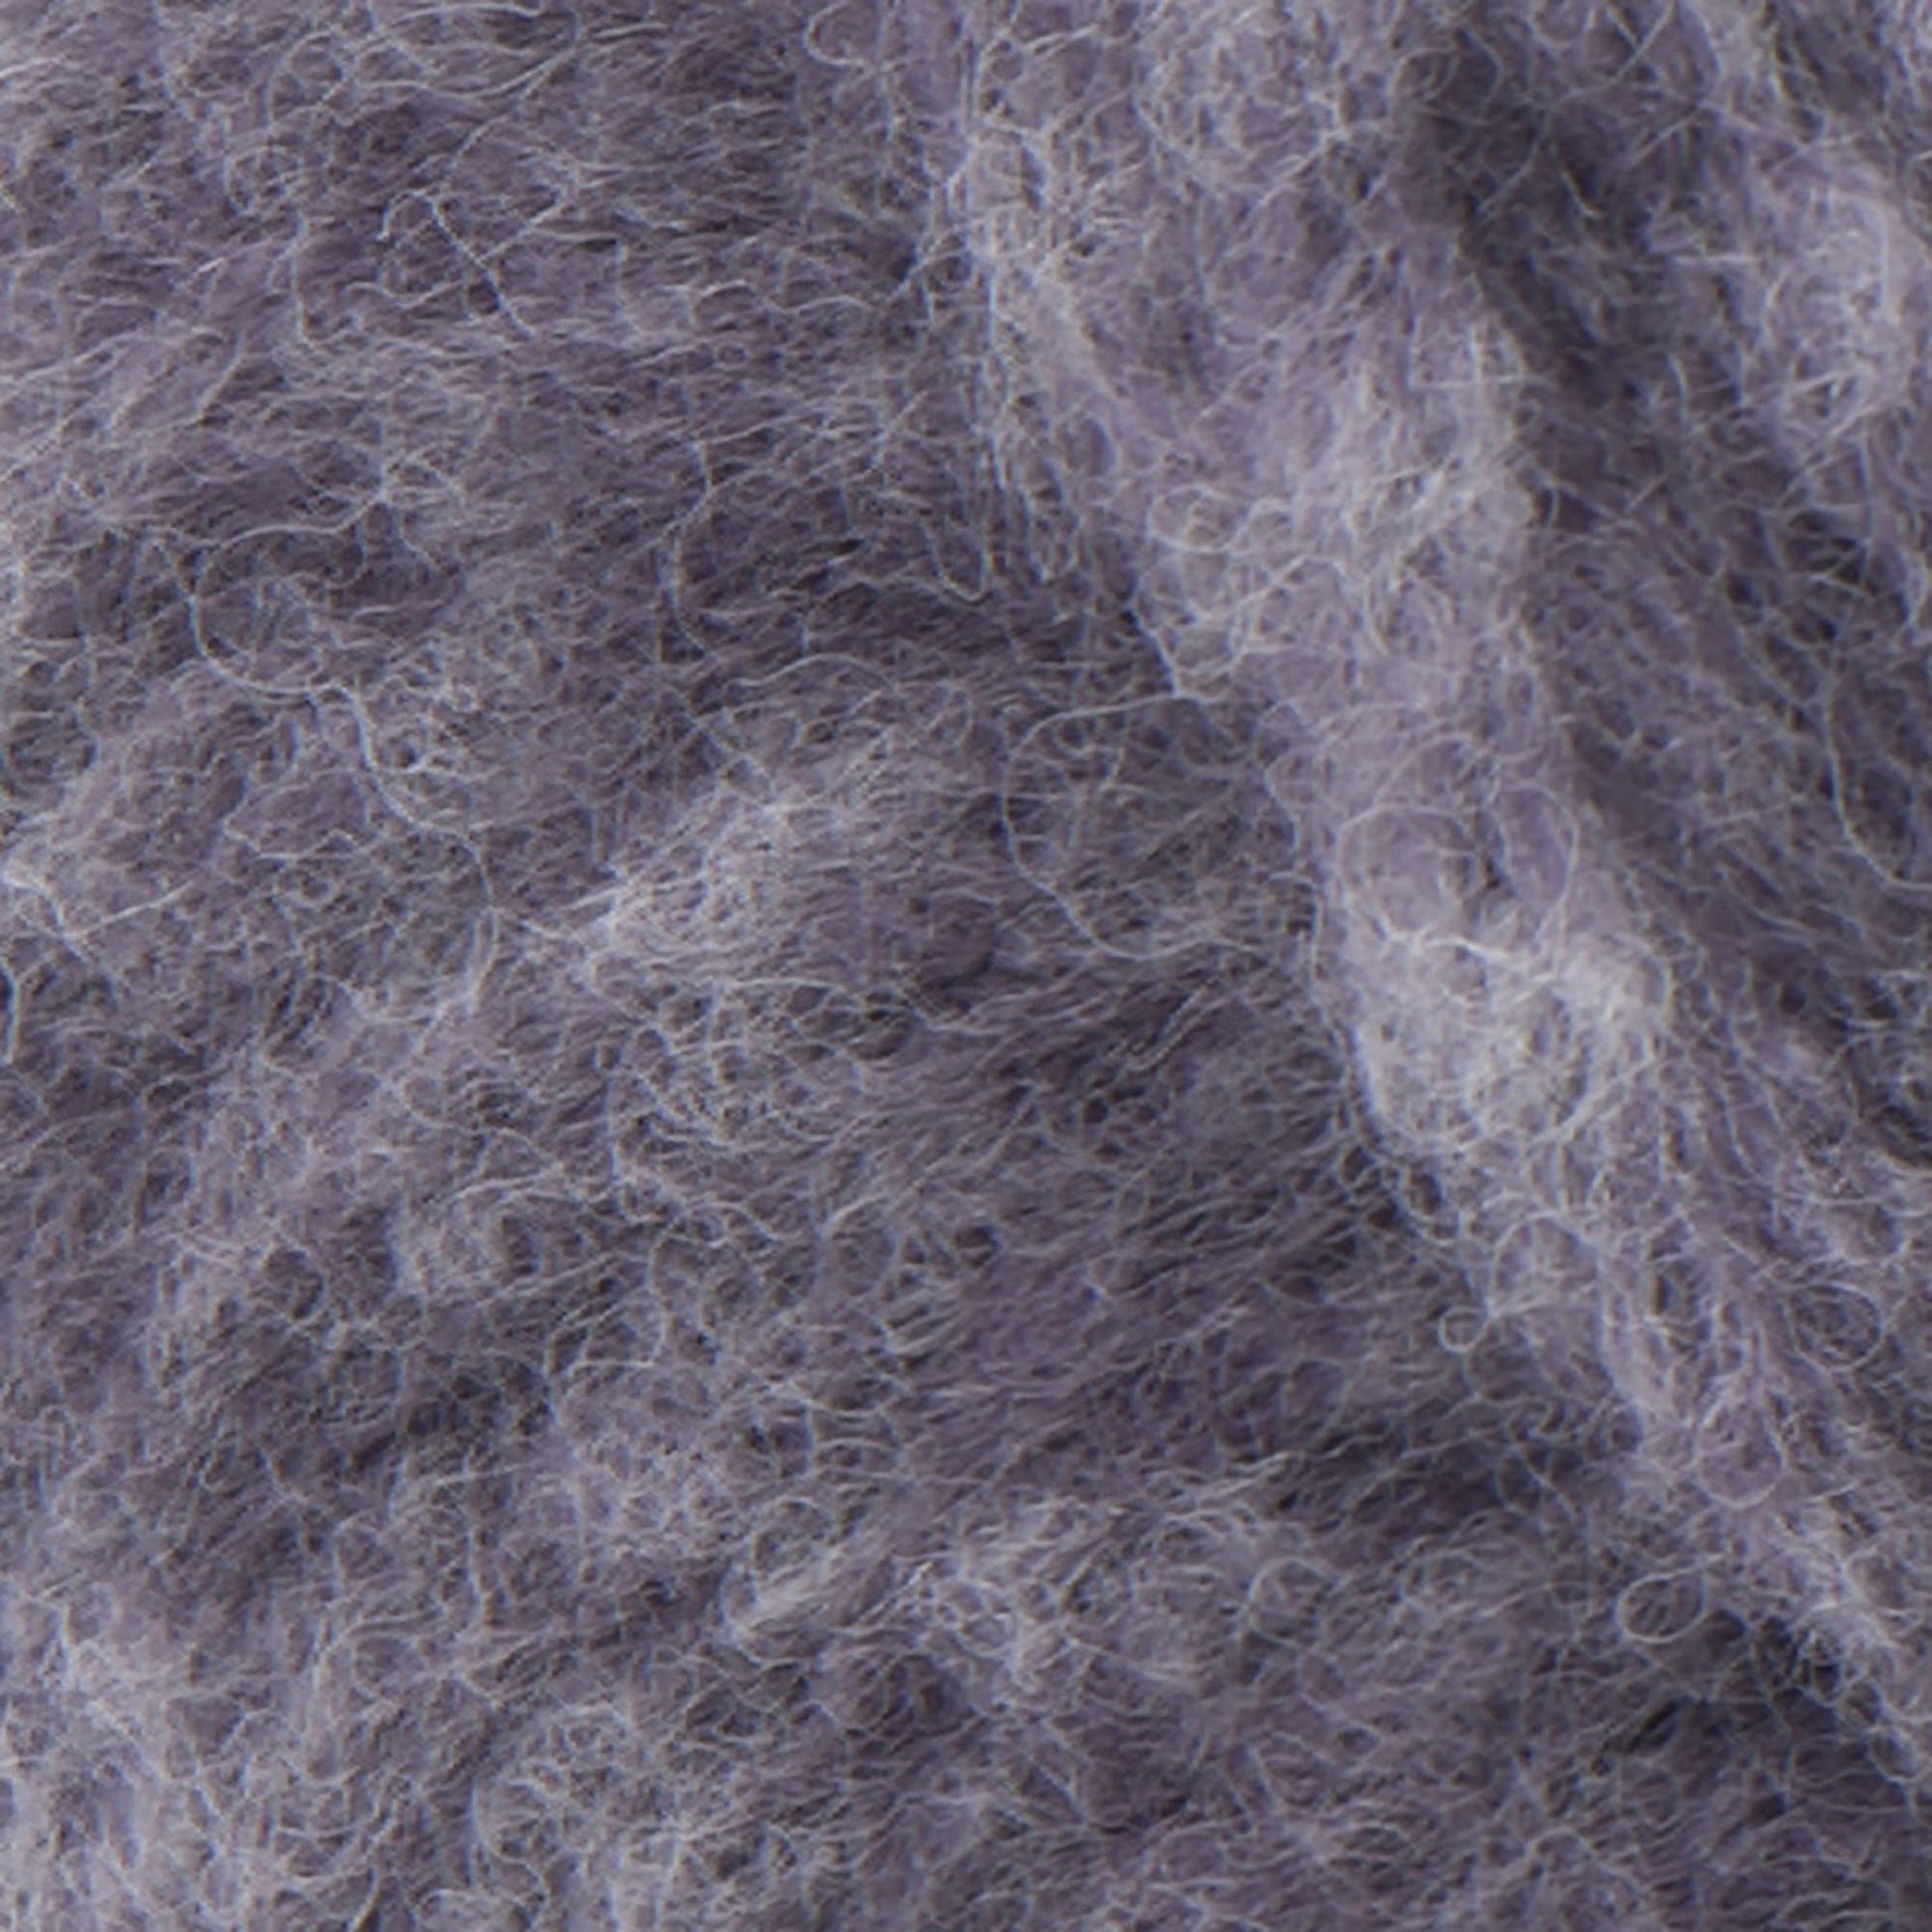 Patons Norse Yarn - Clearance shades Purple Smoke